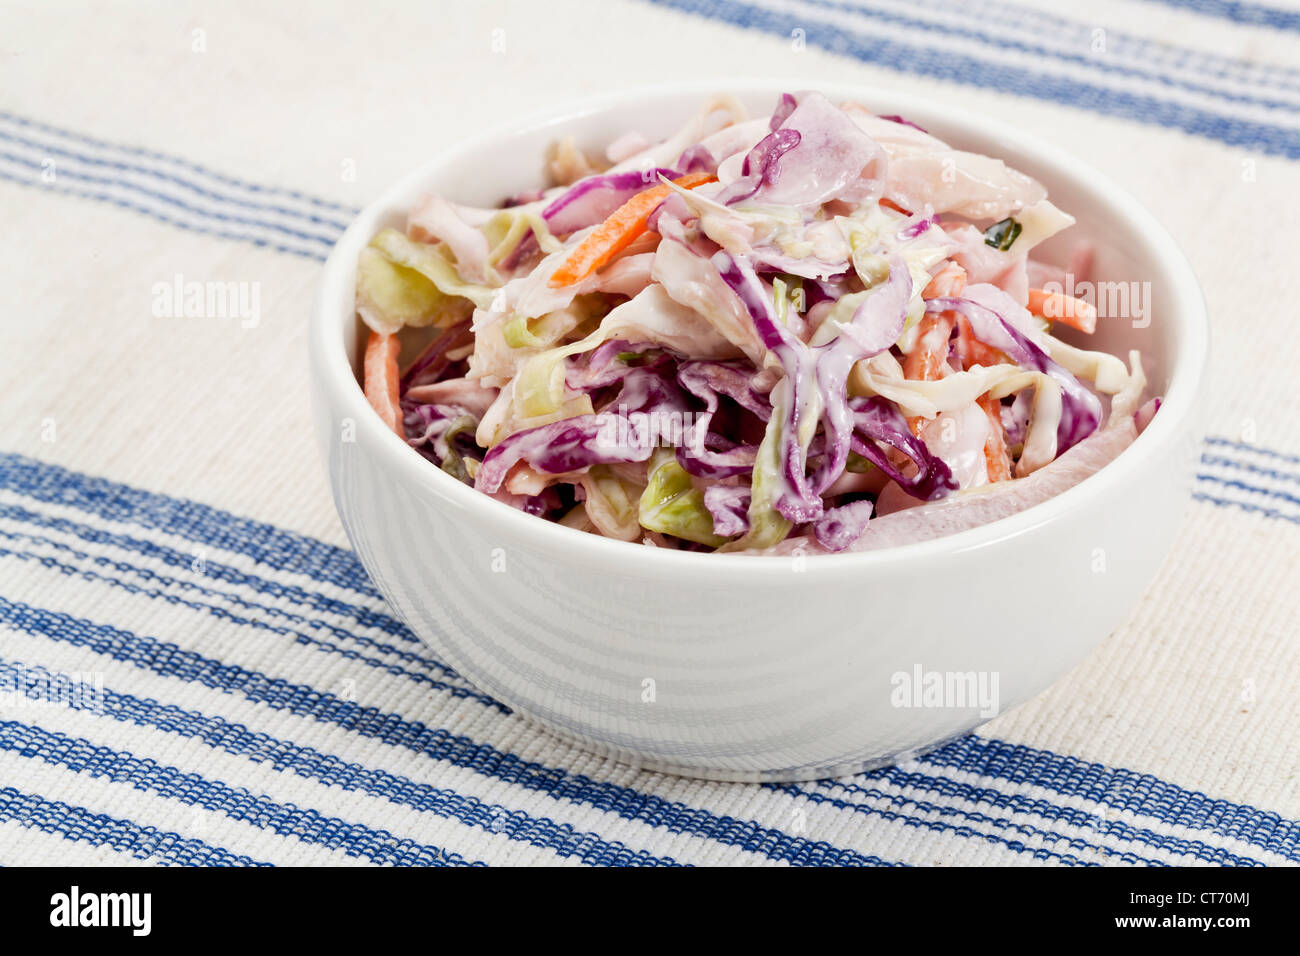 Schüssel Krautsalat Salat - Beilage auf einer Tischdecke Stockfoto